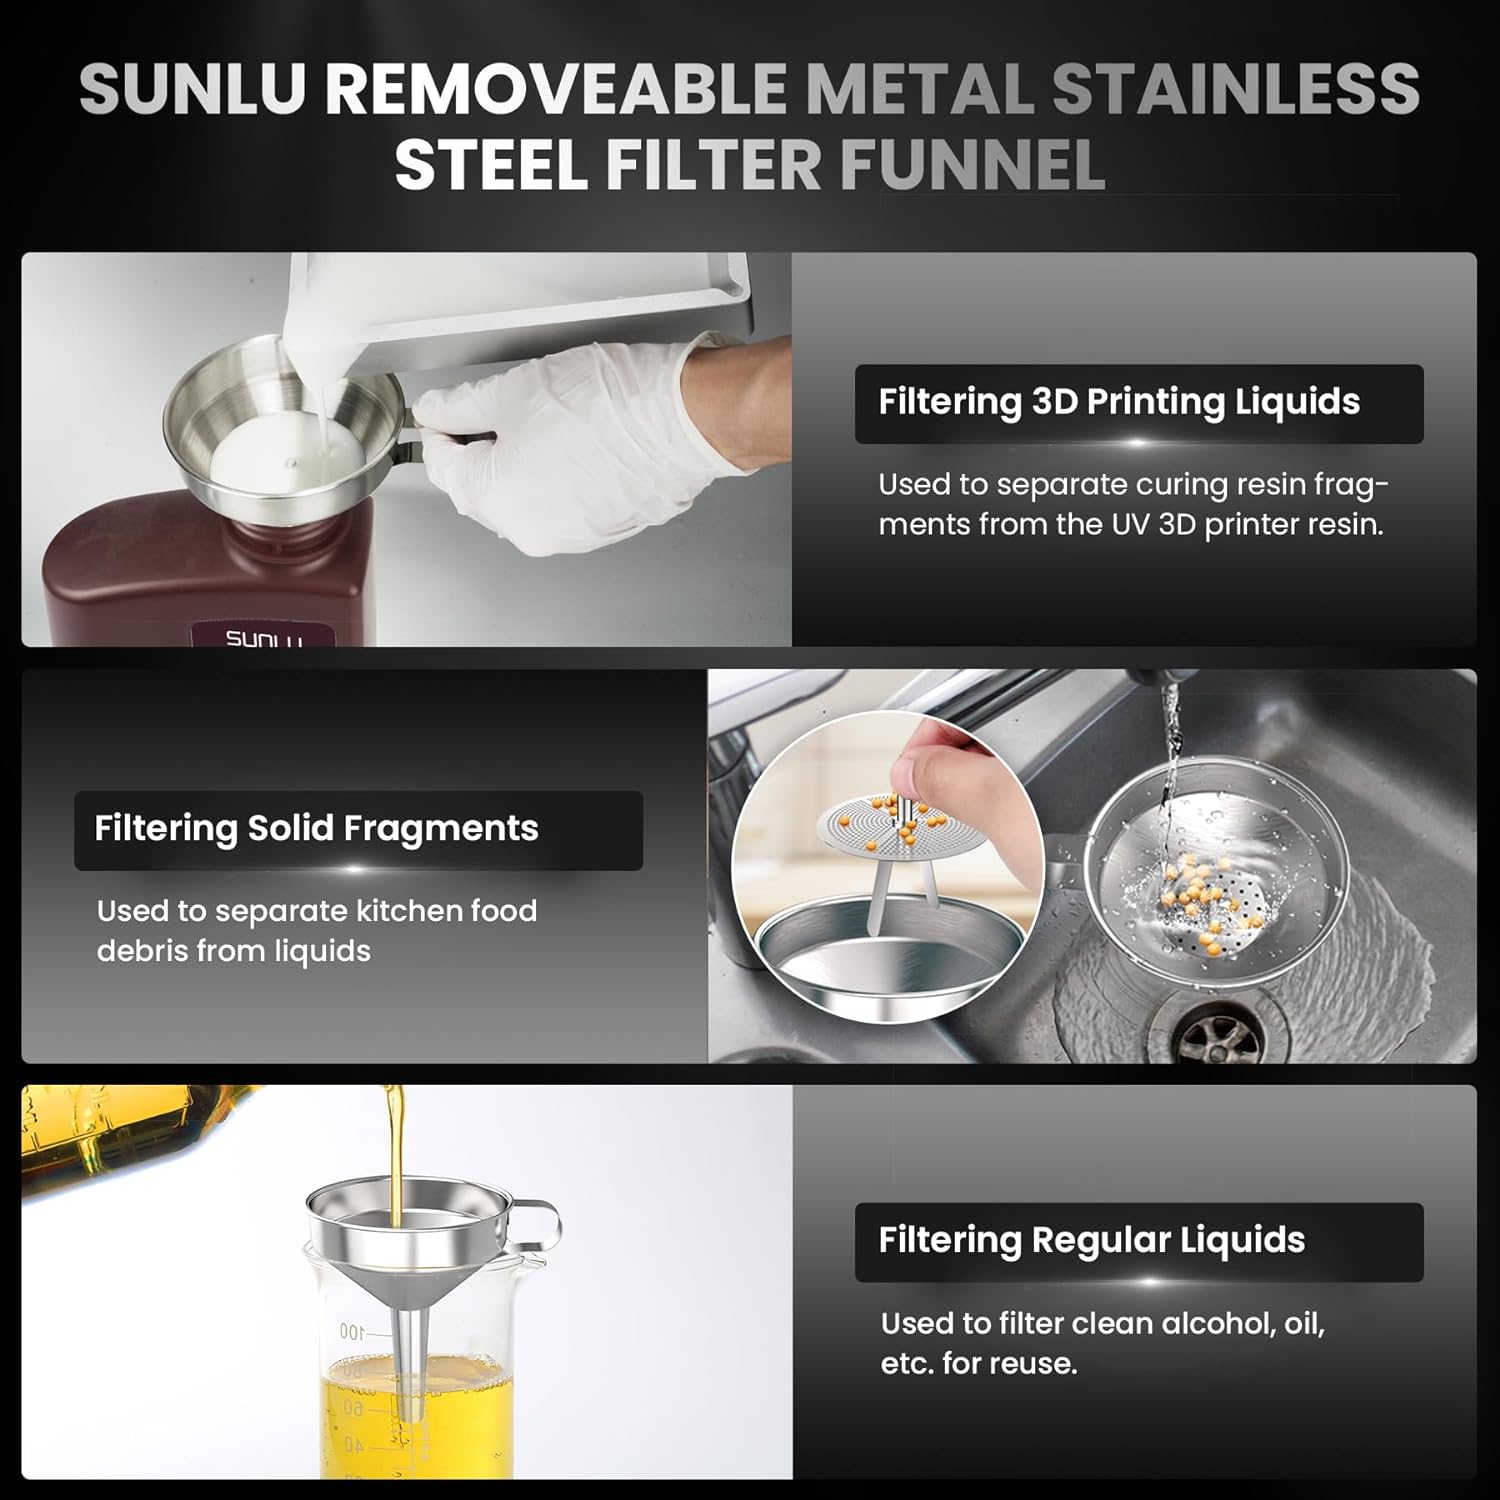 sunlu-3d-printer-resin-funnel-kit-2-packs-304-3d-stainless-steel-funnels4-packs-strainer-filters-3d-printer-accessories-1-2 SUNLU 3D Printer Resin Funnel Kit Review